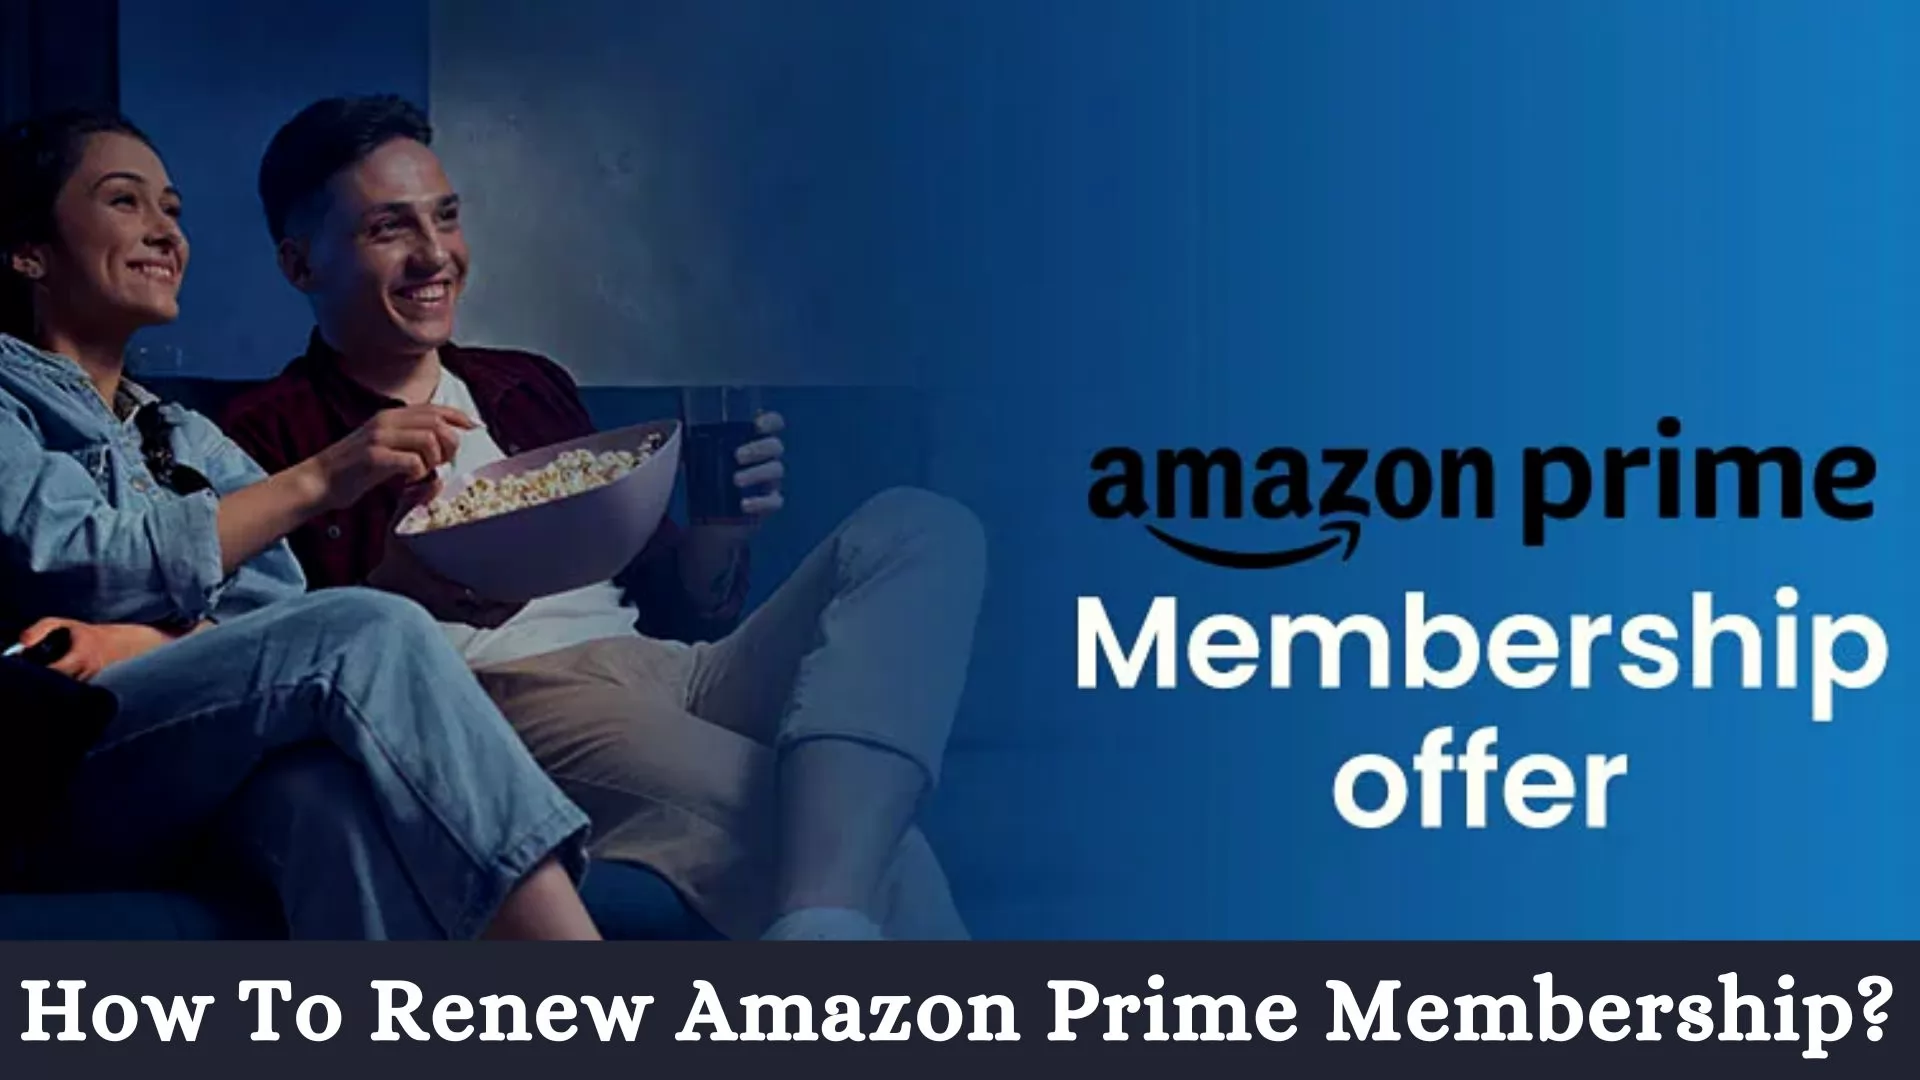 How To Renew Amazon Prime Membership